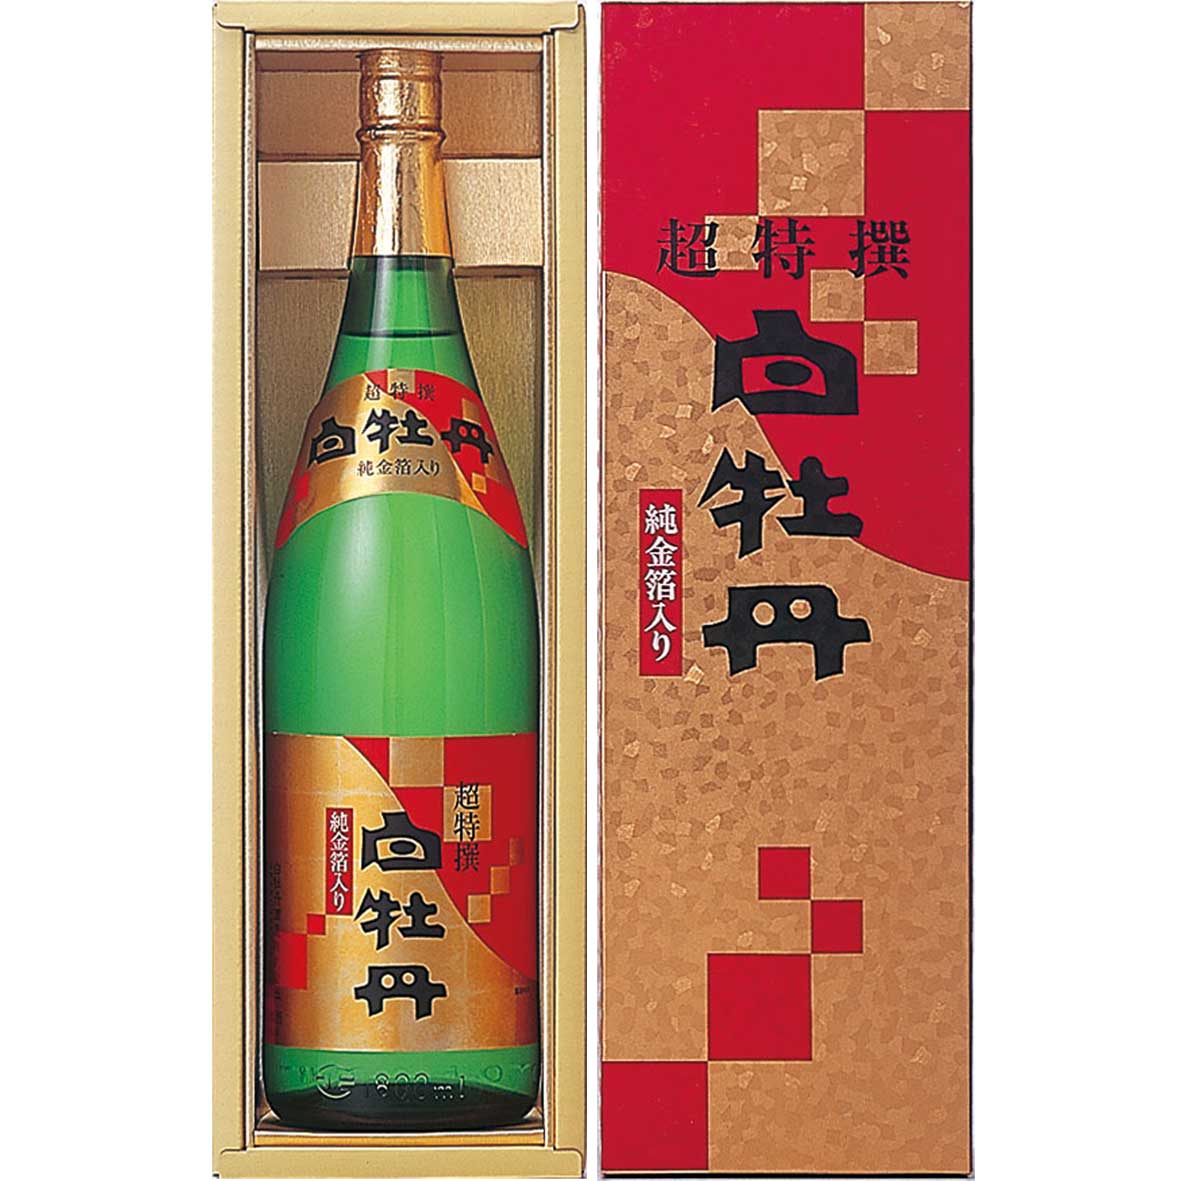 【日本酒 白牡丹】超特撰 純金箔入 1.8L瓶詰